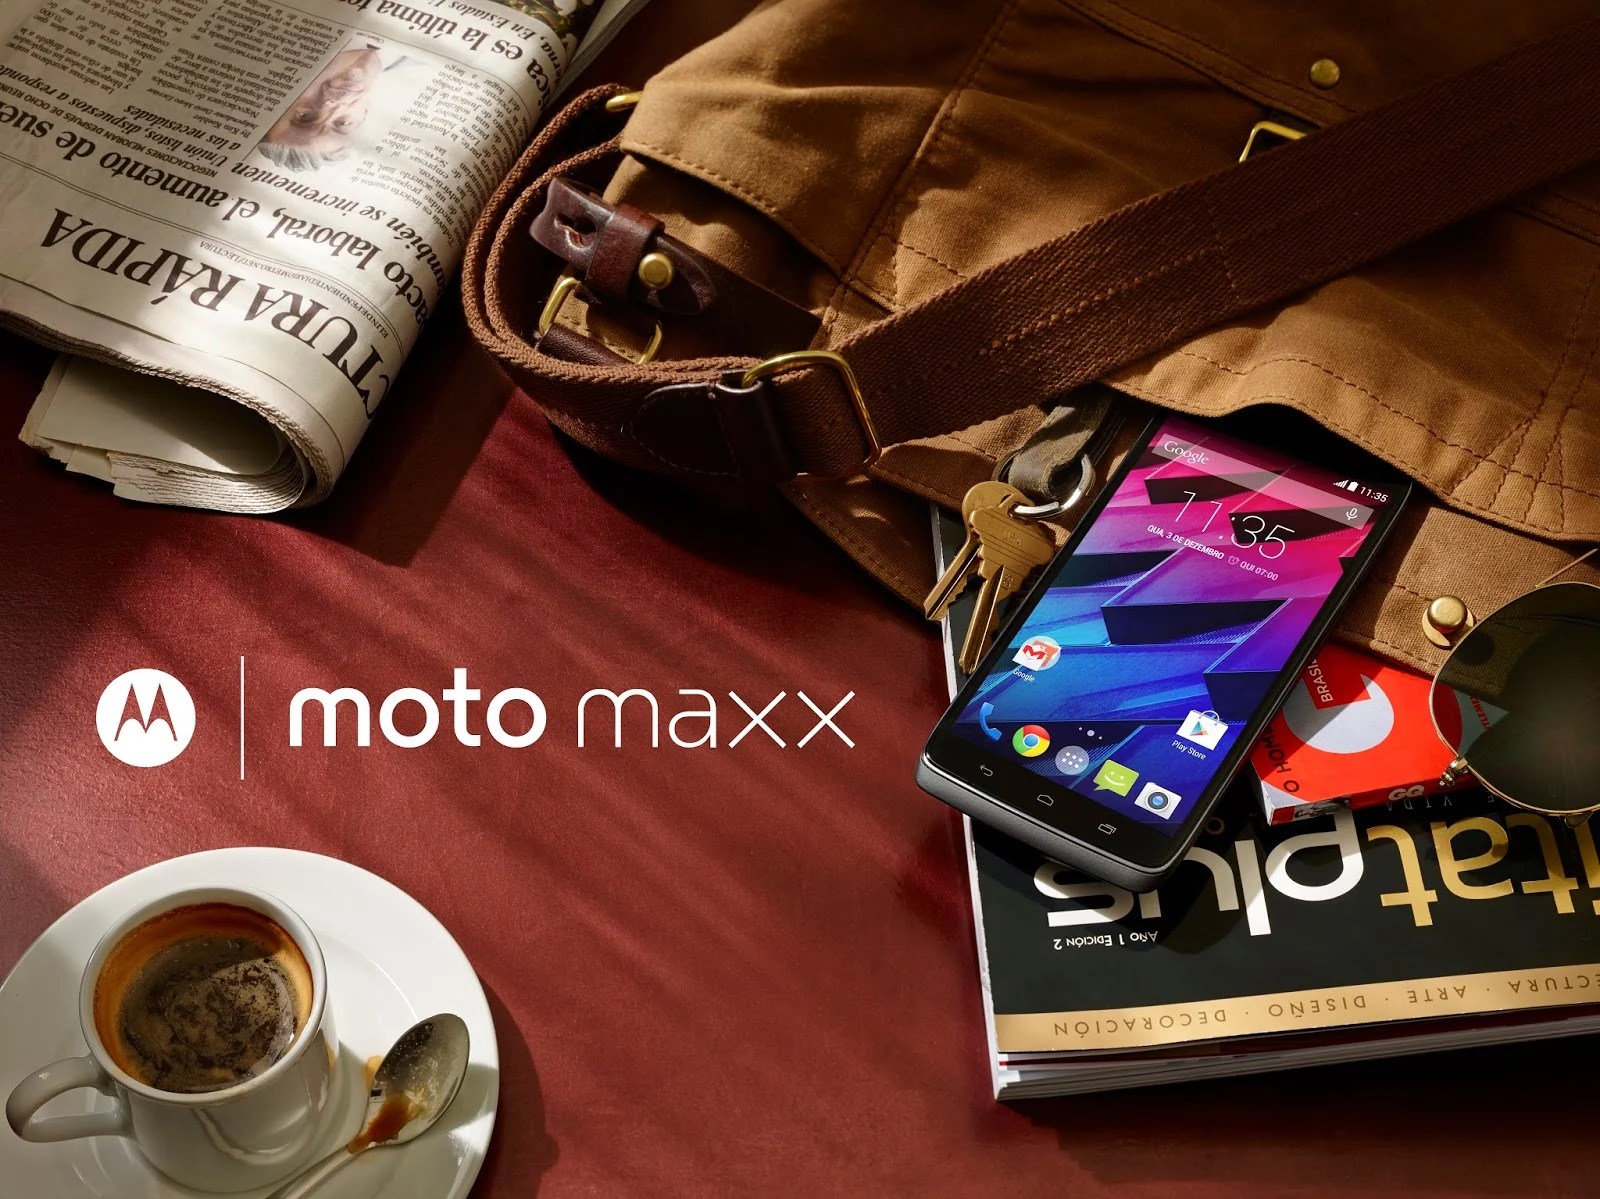 Le Moto Maxx est officiel, dommage qu’il soit réservé à l’Amérique du Sud